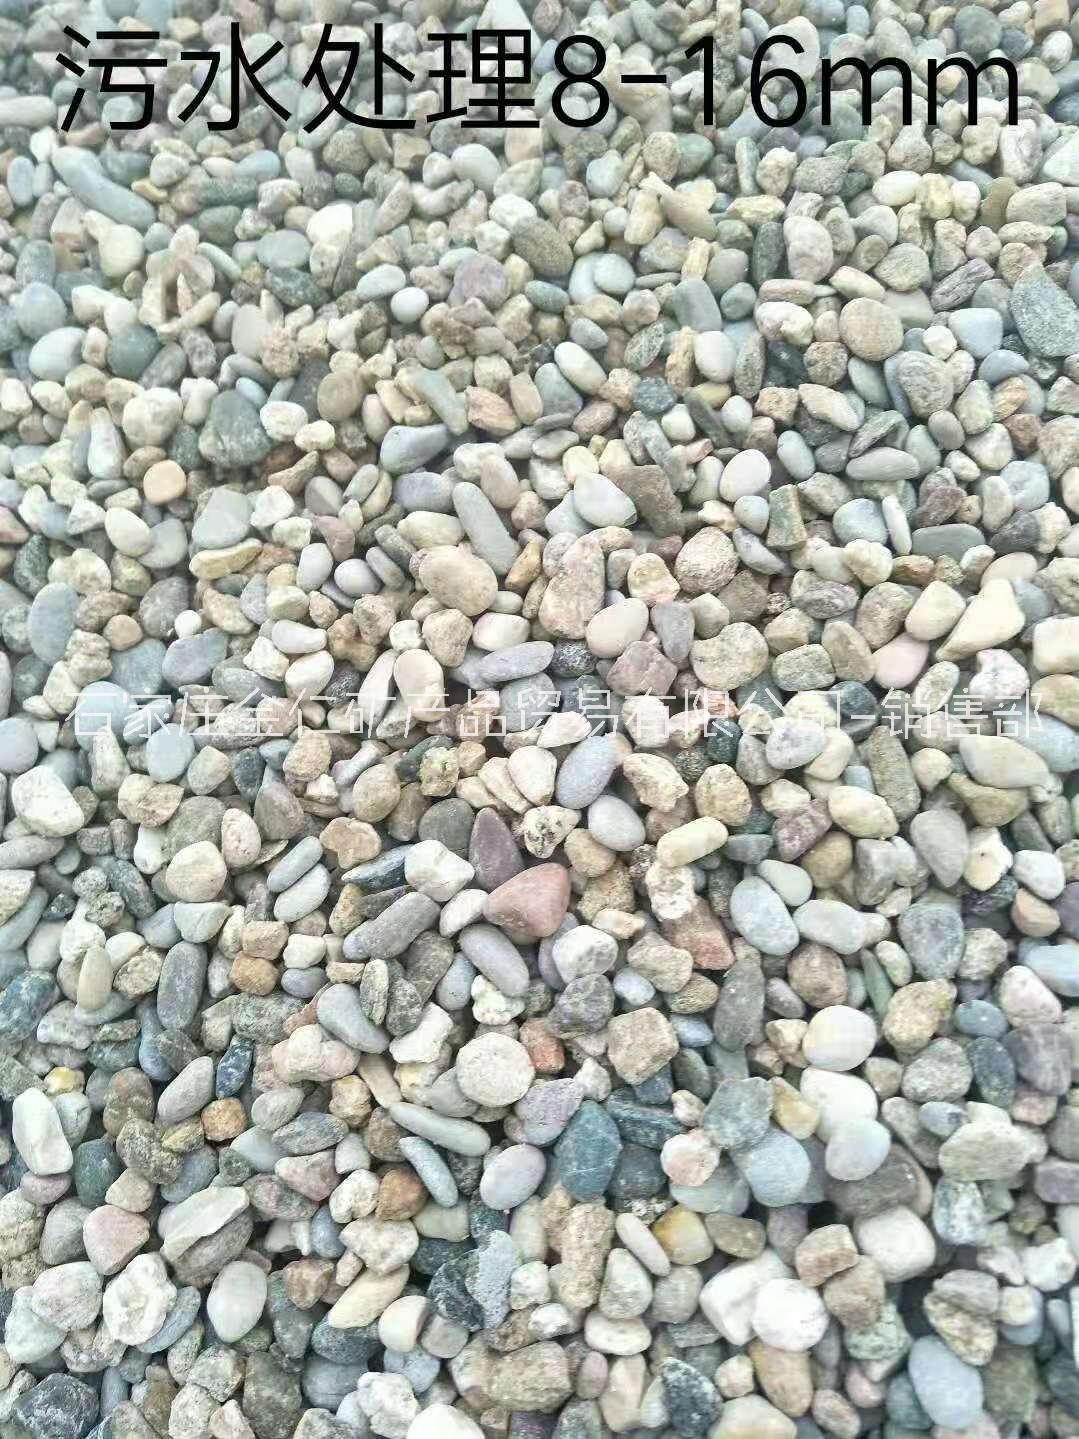 鹅卵石填料天然鹅卵石价格鹅卵石价格鹅卵石多少钱一吨 黑色鹅卵石价格白色鹅卵石